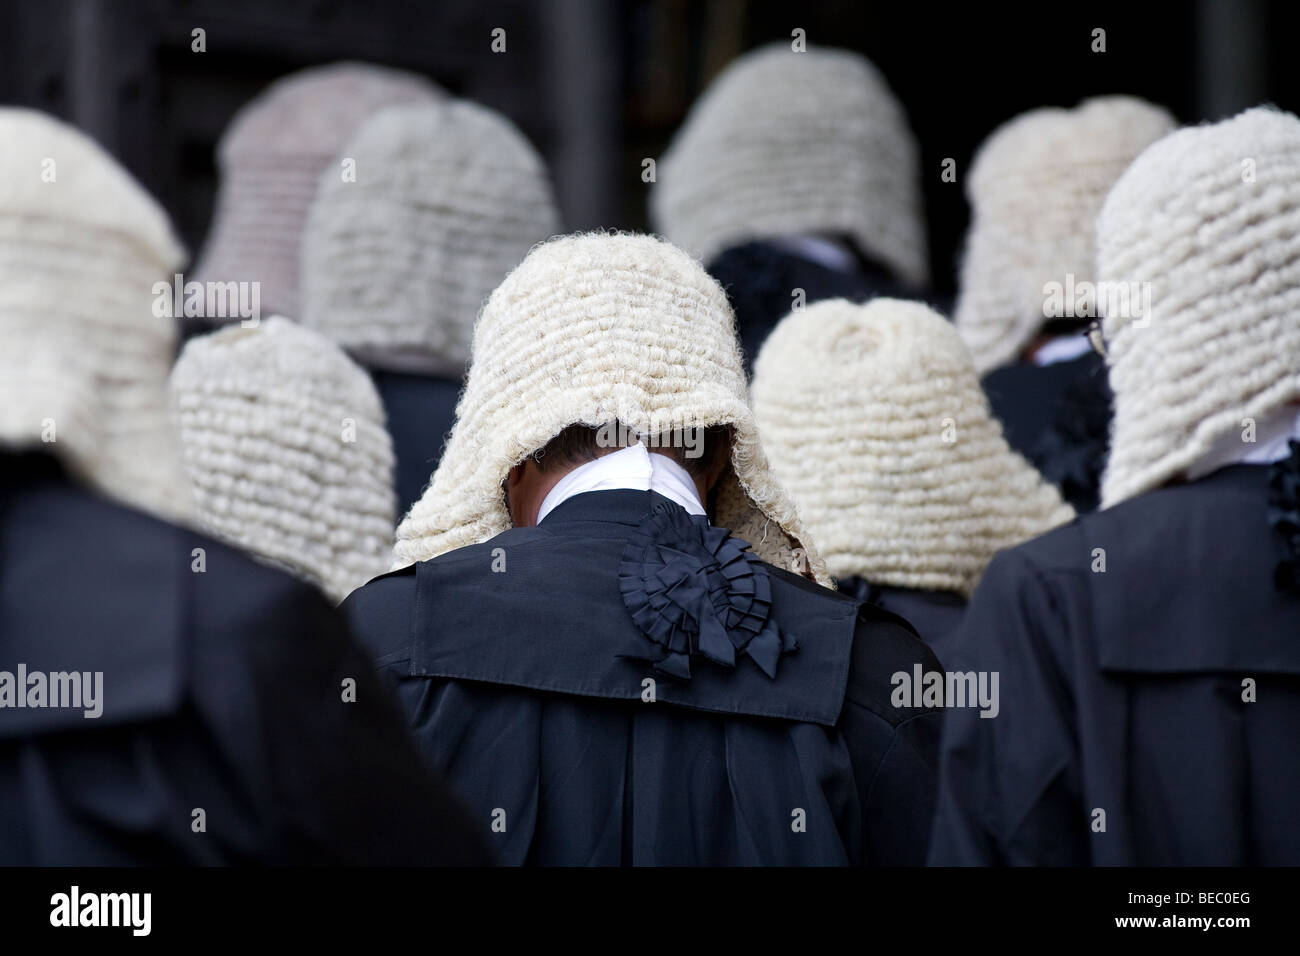 Les juges de procession à l'abbaye de Westminster à Londres Banque D'Images